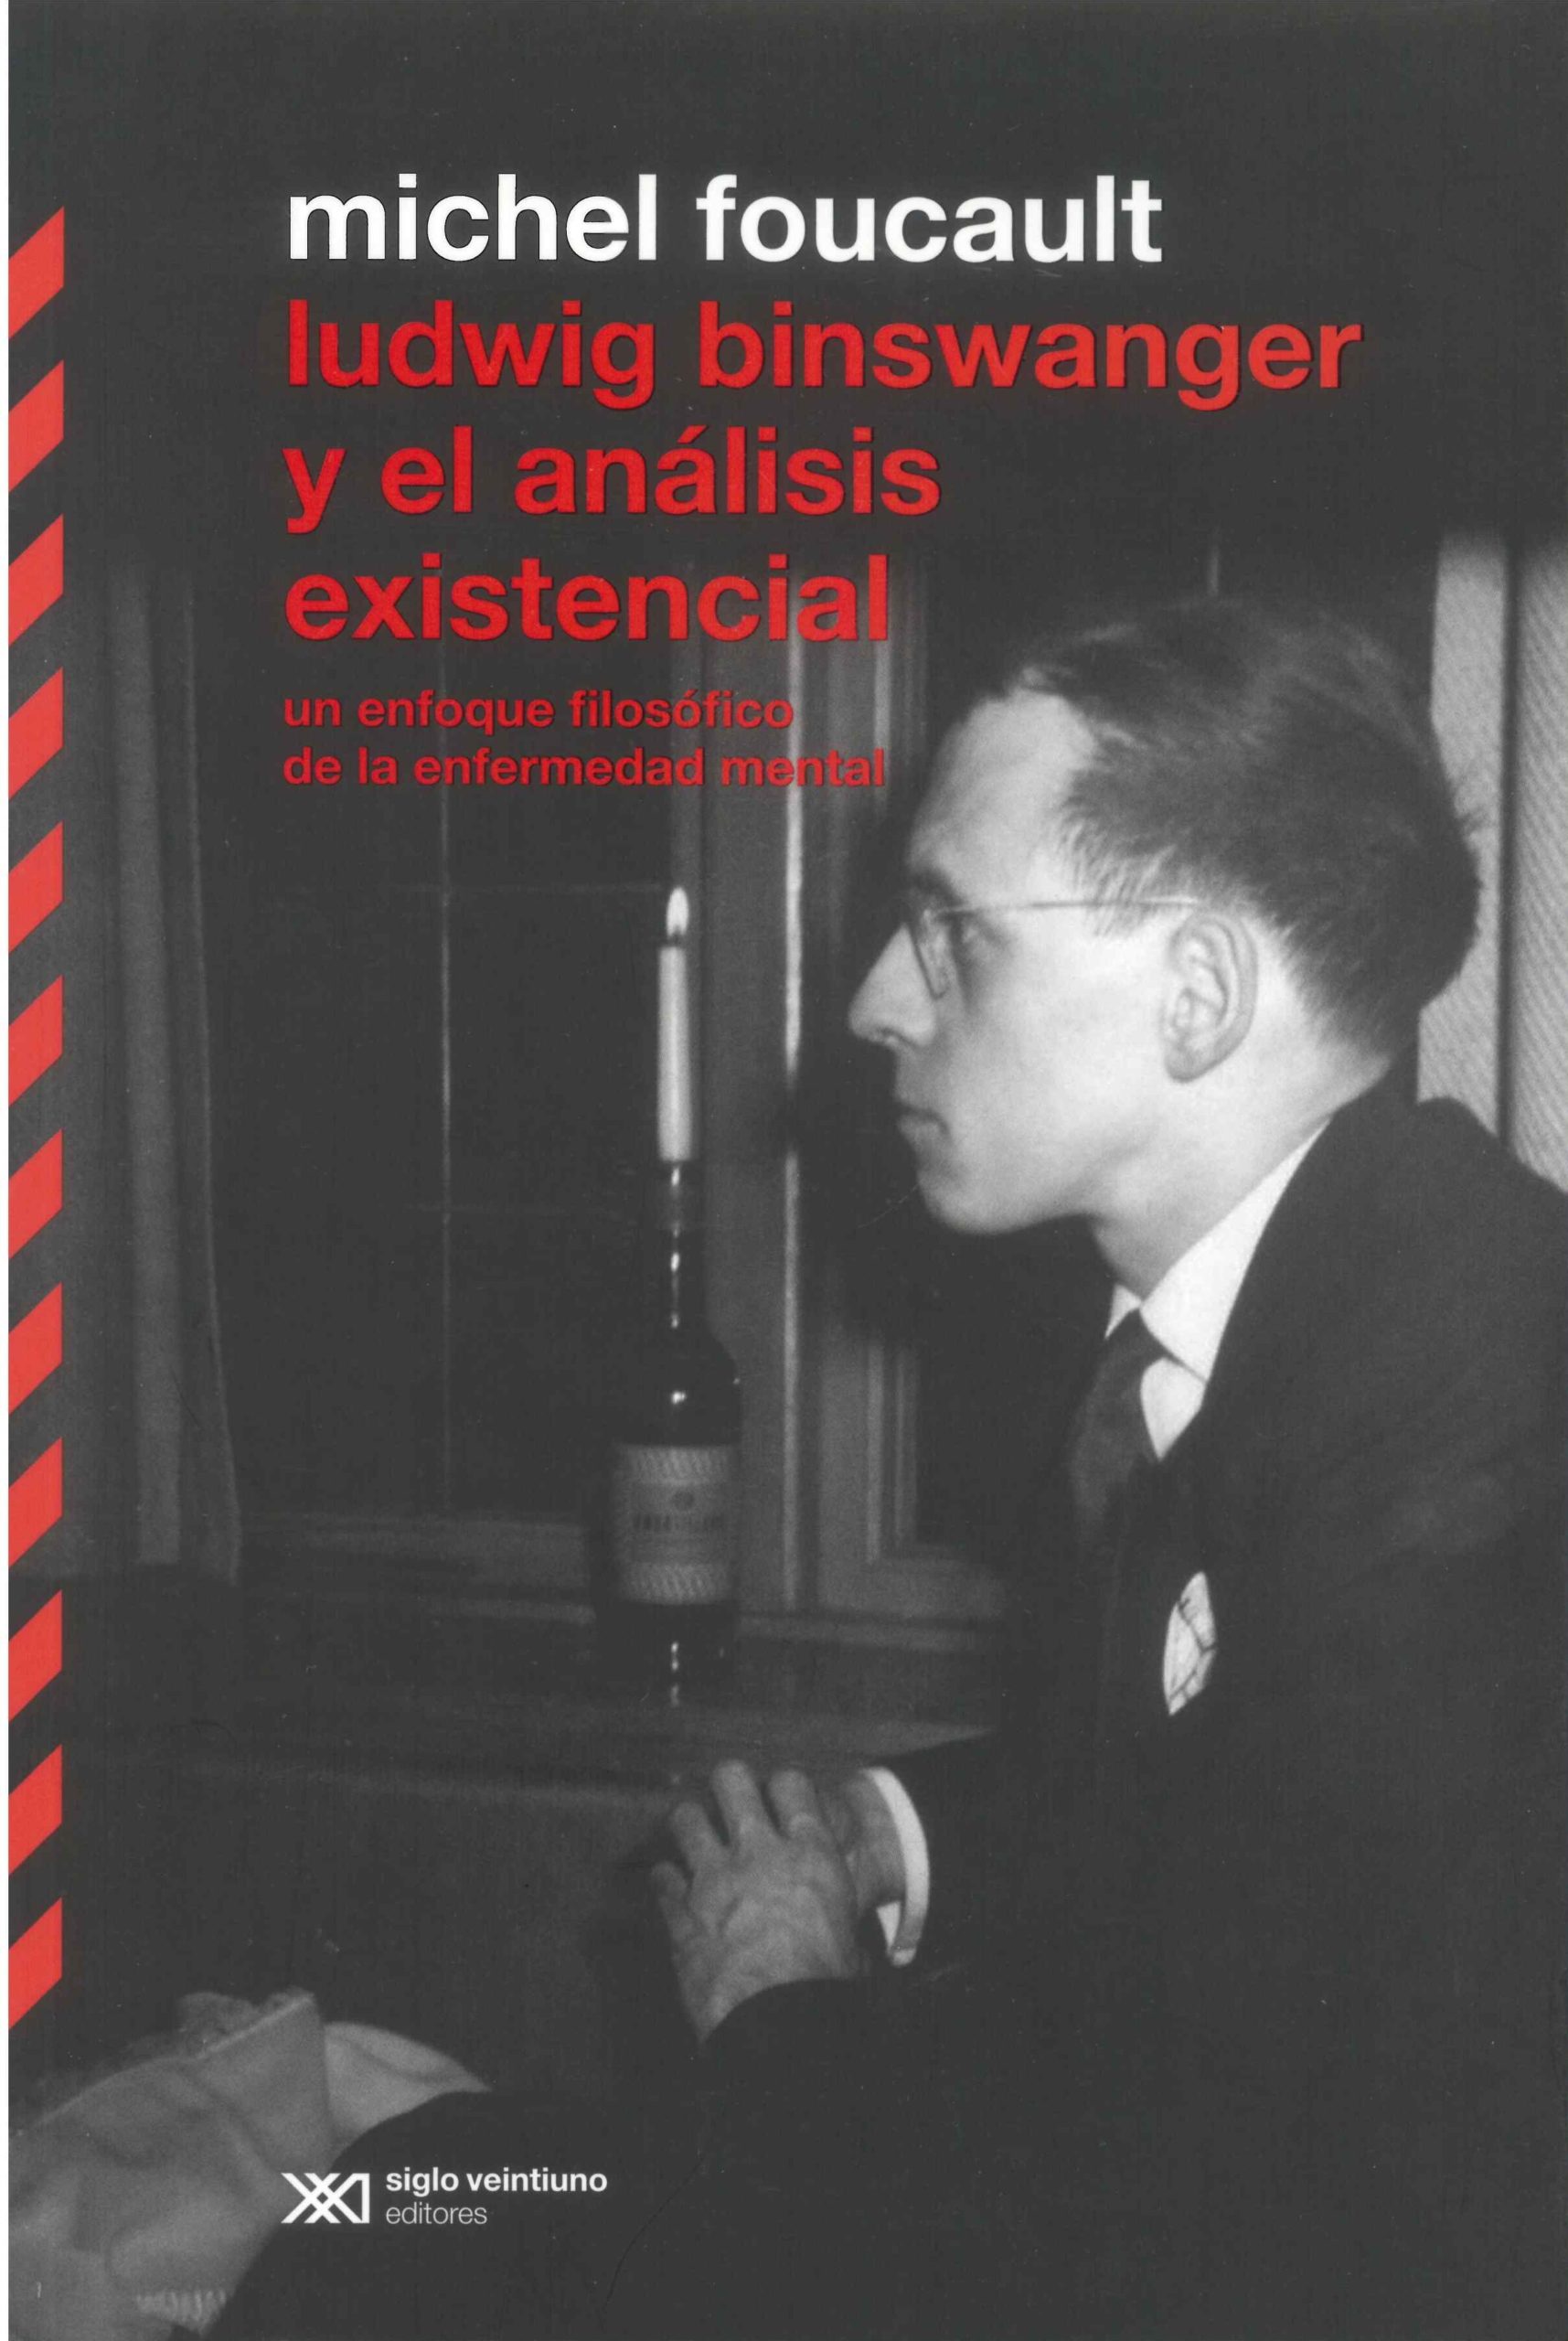 Chapter Summaries of “Michel Foucault – Ludwig Binswanger y el análisis existencial. Un enfoque filosófico de la enfermedad mental”